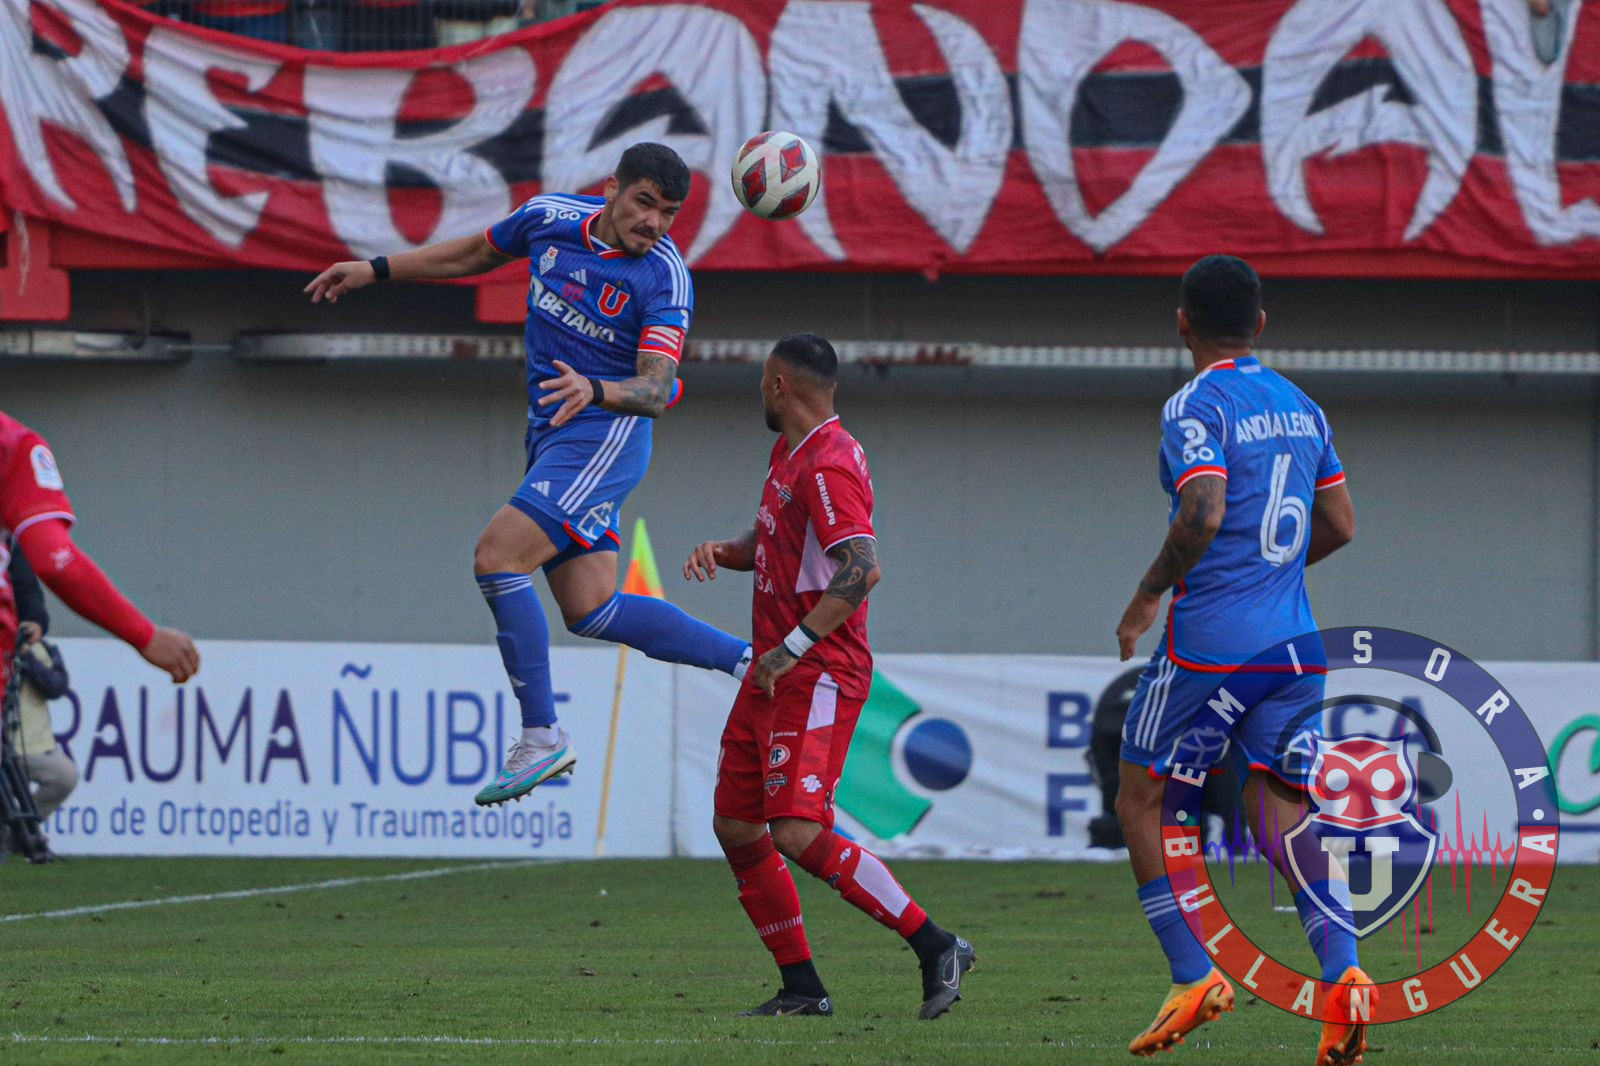 Luis Casanova valoró el empate ante Ñublense en Chillán: “El equipo se sigue aceitando”